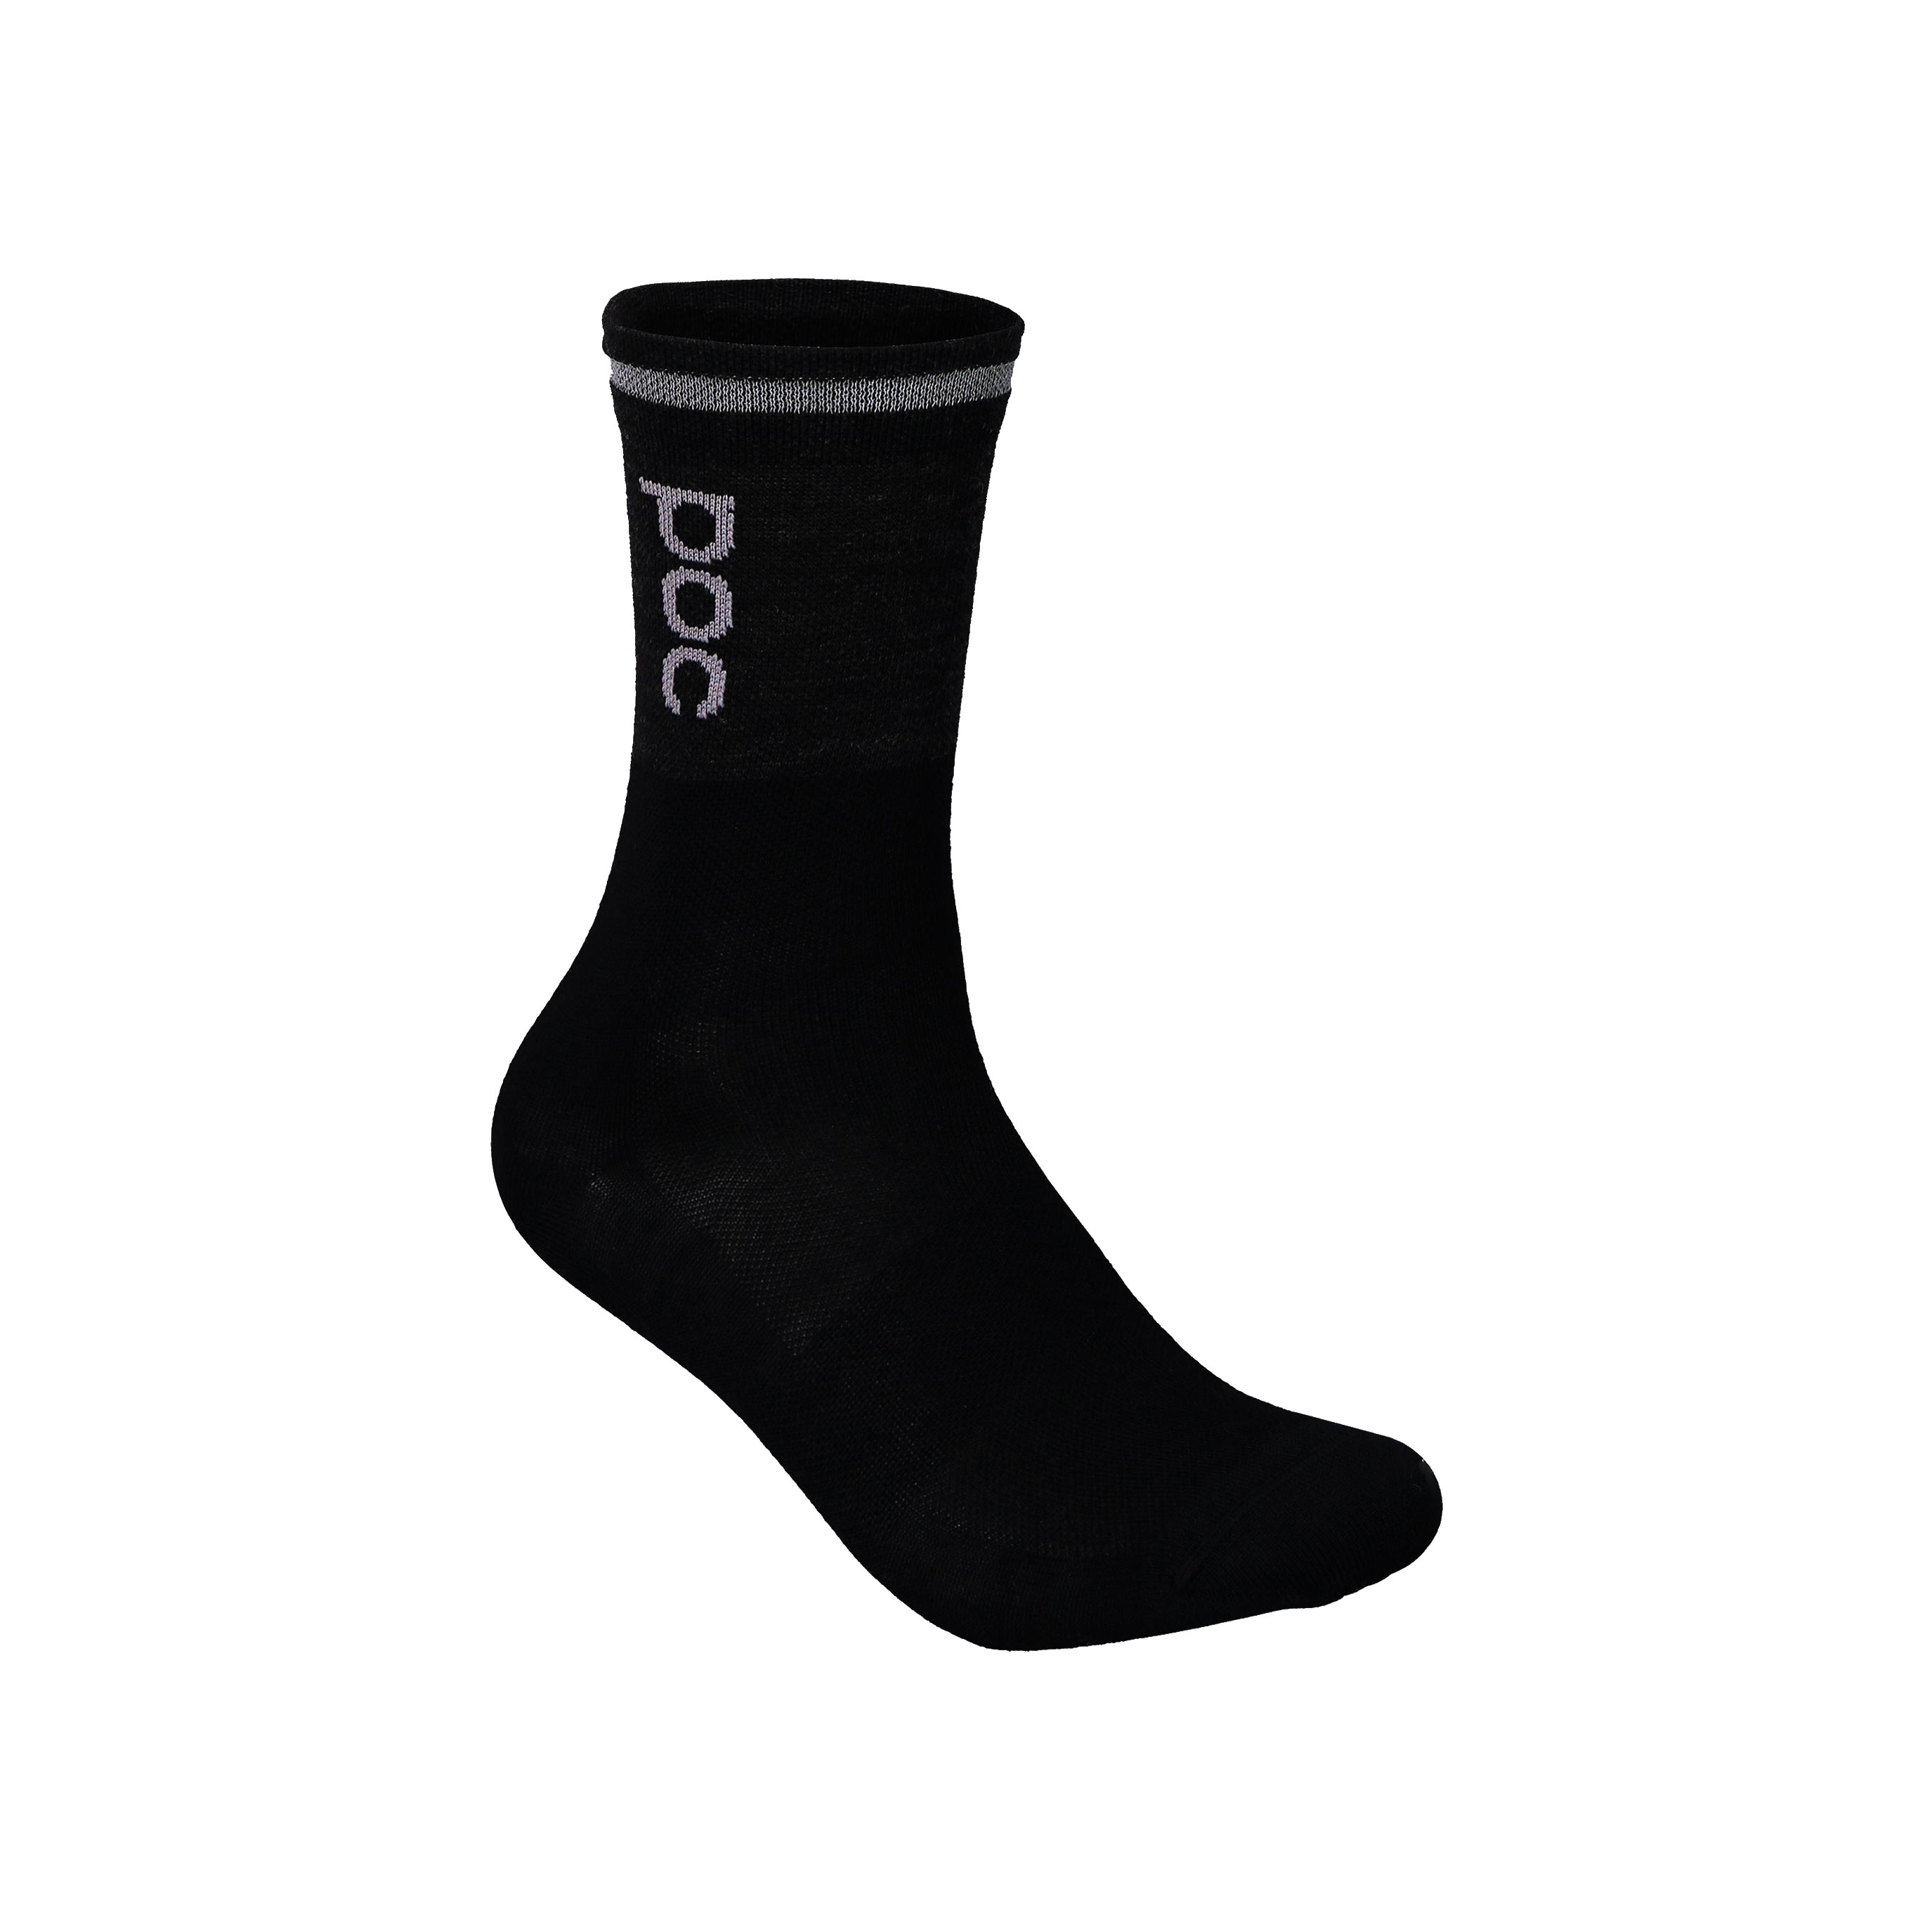 POC Thermal Sock Sylvanitegrey/Black